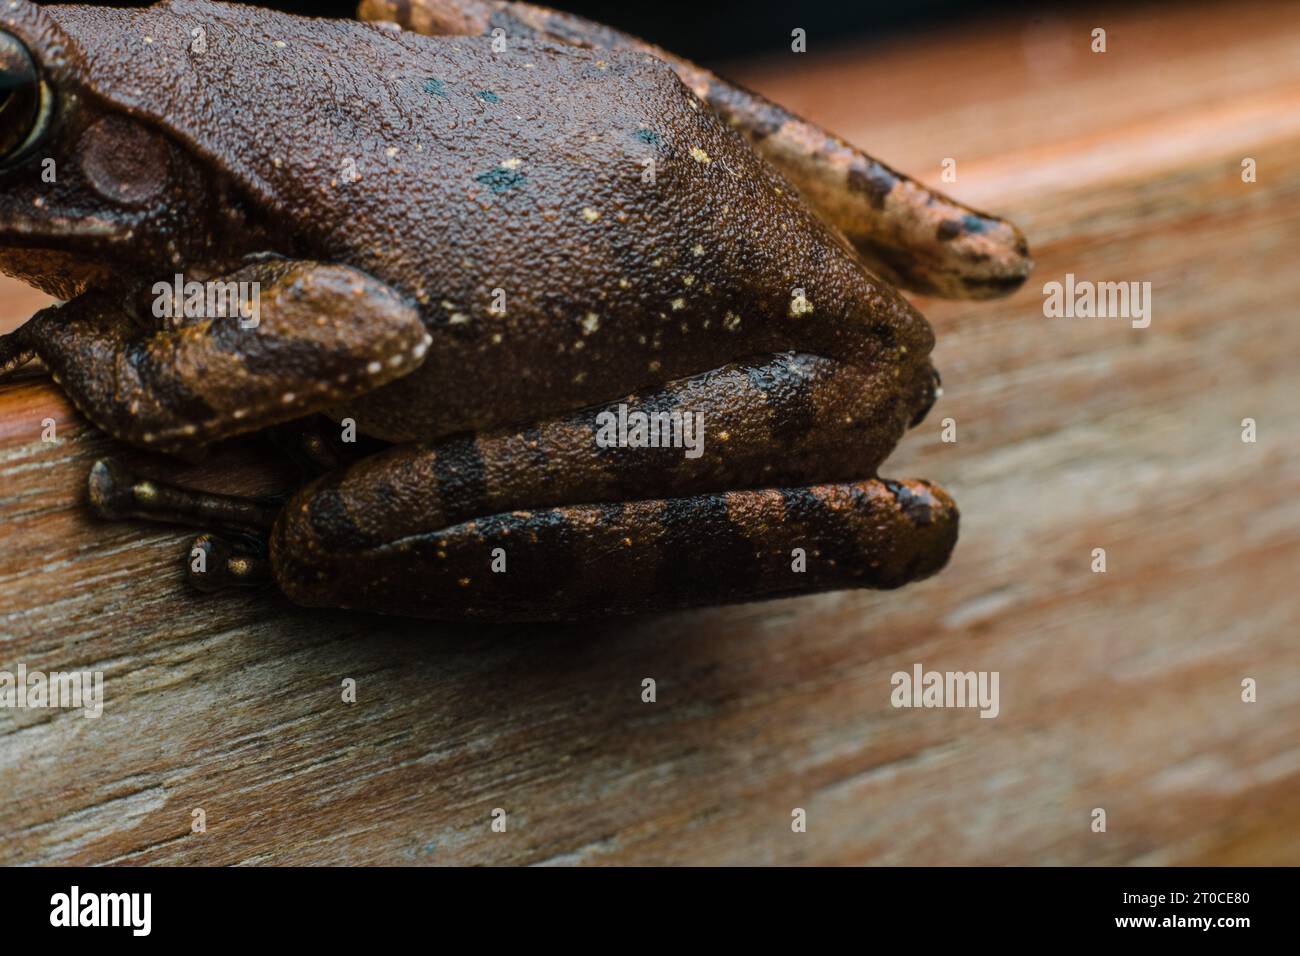 photographie commune de grenouille d'arbre sur une planche de bois faisant face à la gauche sur un style de photographie en gros plan. Banque D'Images